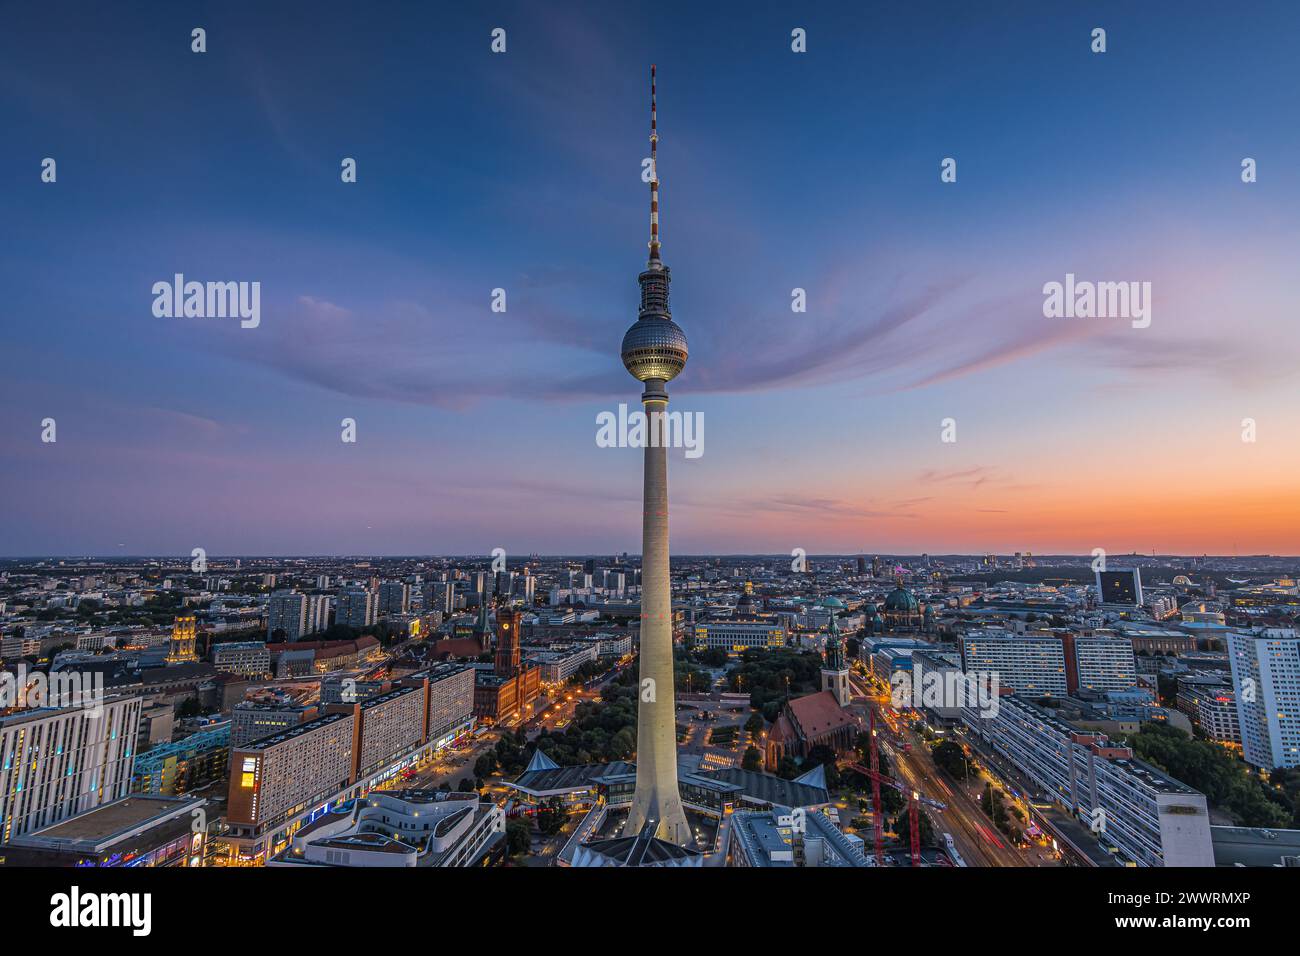 Berliner Skyline am Abend. Zentrum der Hauptstadt Deutschlands mit berühmten Wahrzeichen. Beleuchteter Fernsehturm nach Sonnenuntergang zur blauen Stunde. Beleuchtet Stockfoto